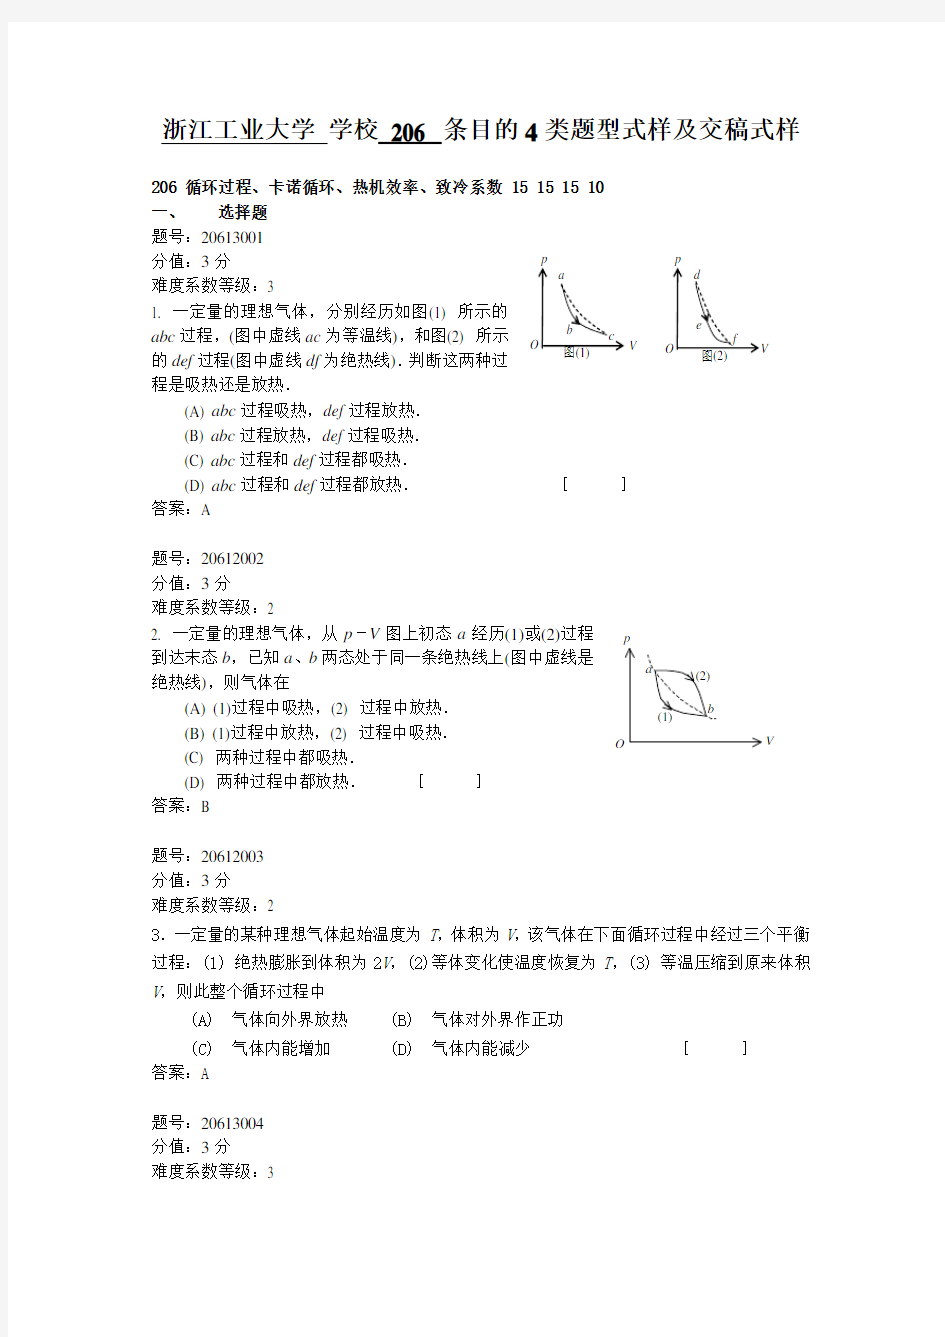 浙江省大学物理试题库206-循环过程、卡诺循环、热机效率、致冷系数